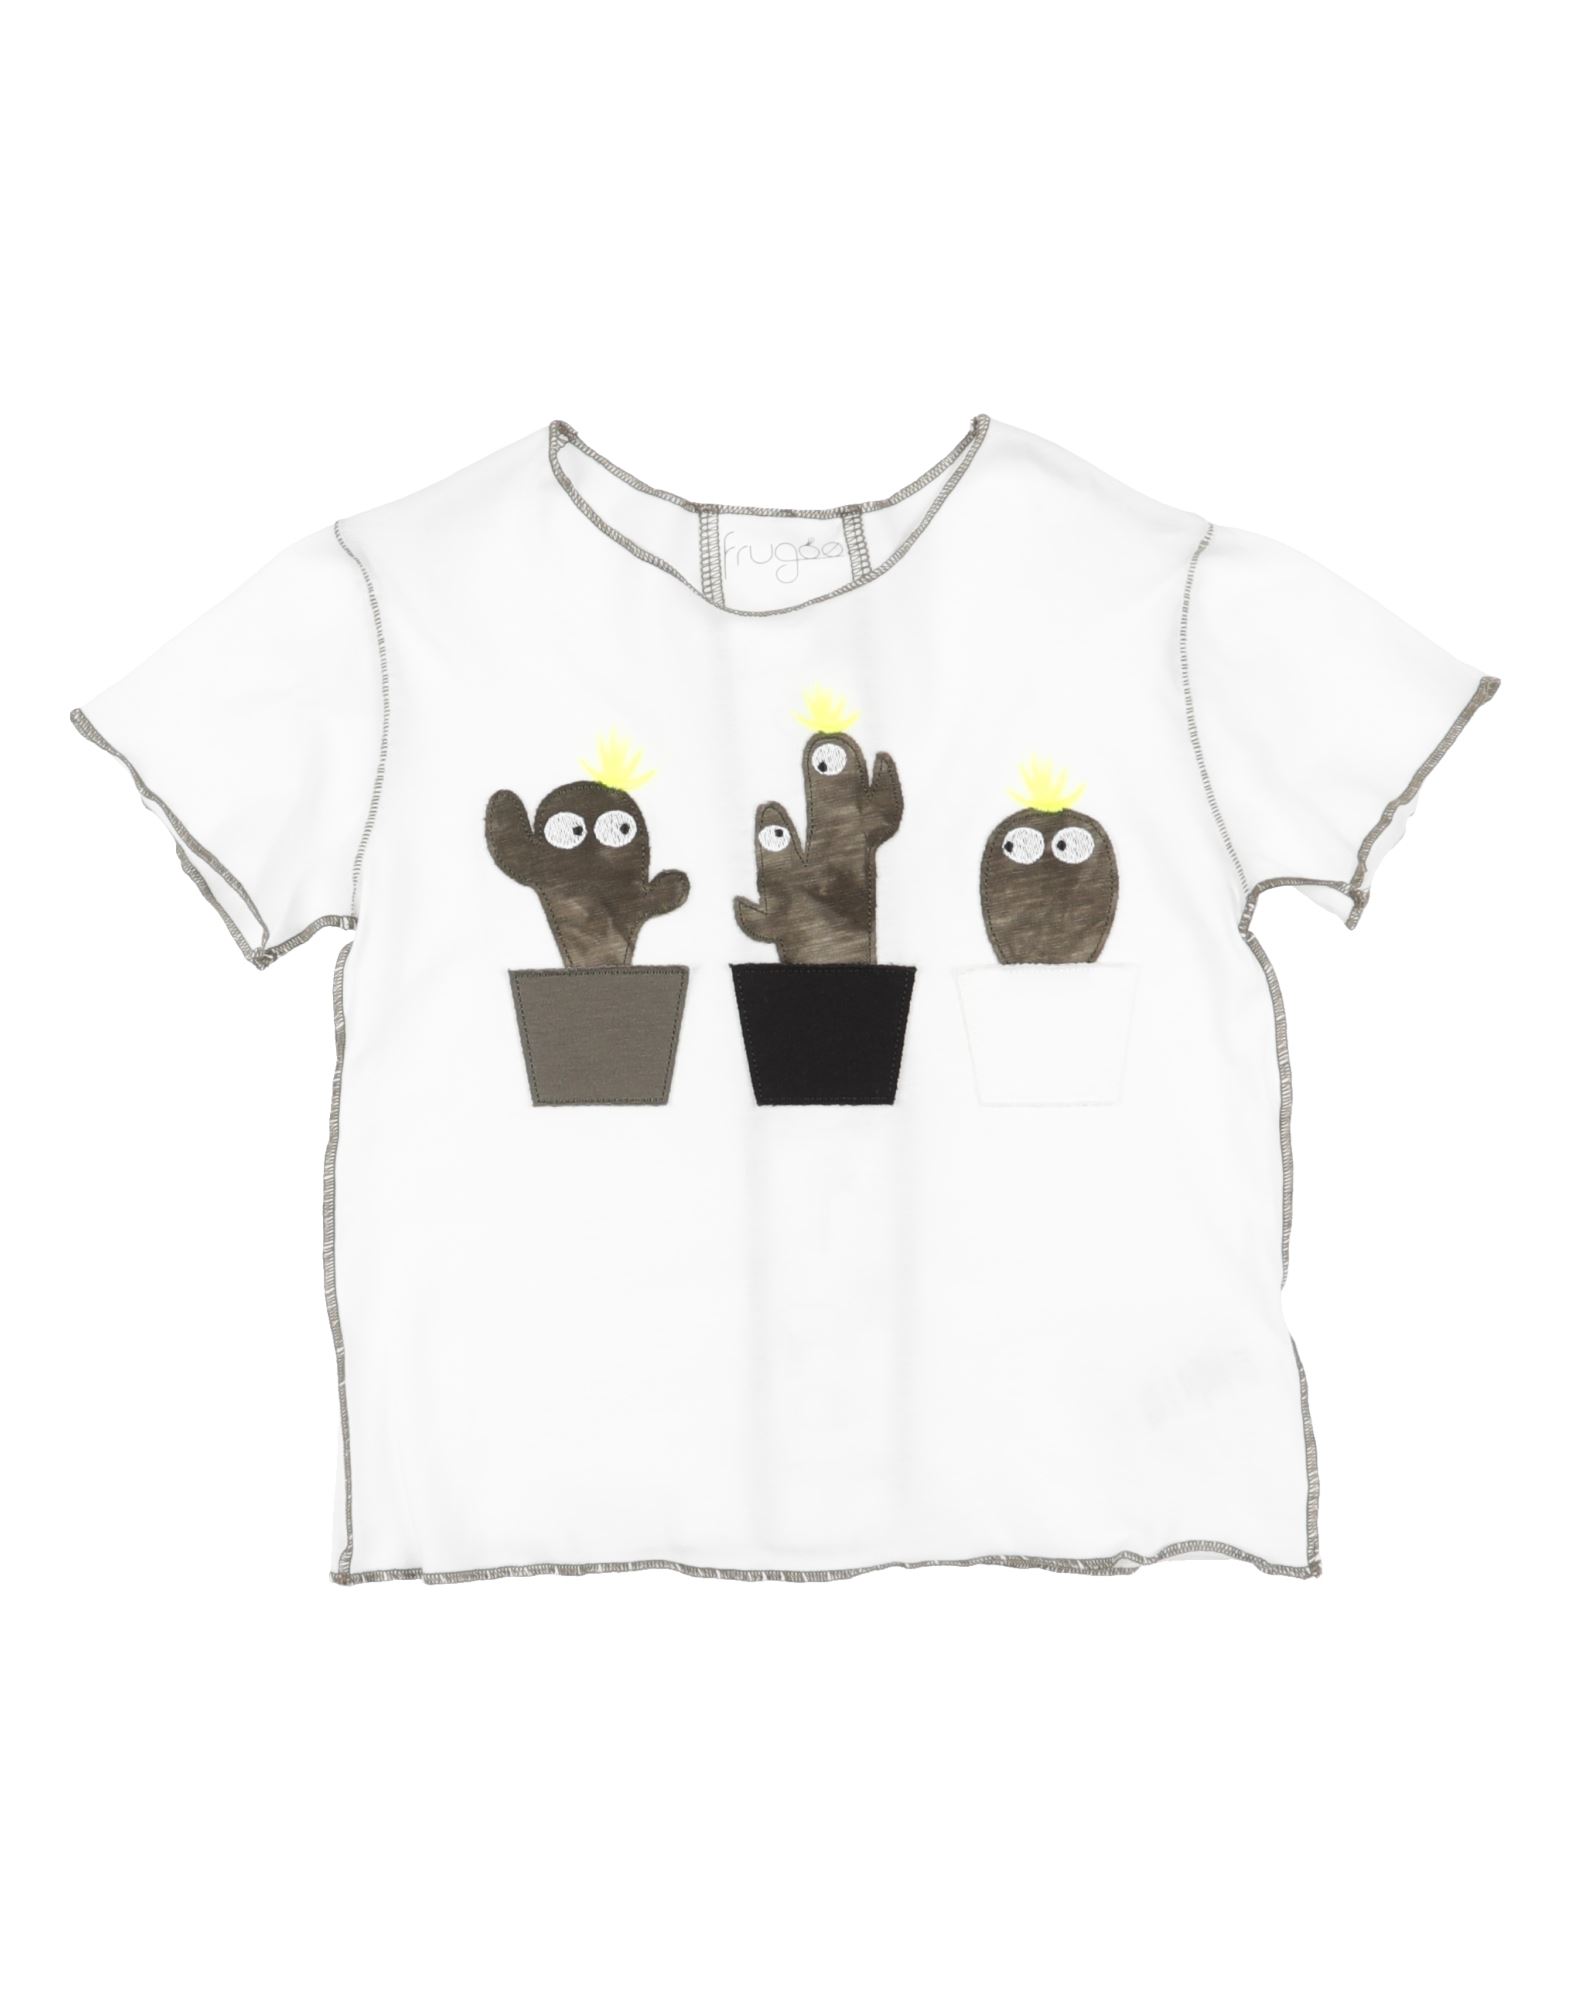 FRUGOO T-shirts Kinder Weiß von FRUGOO